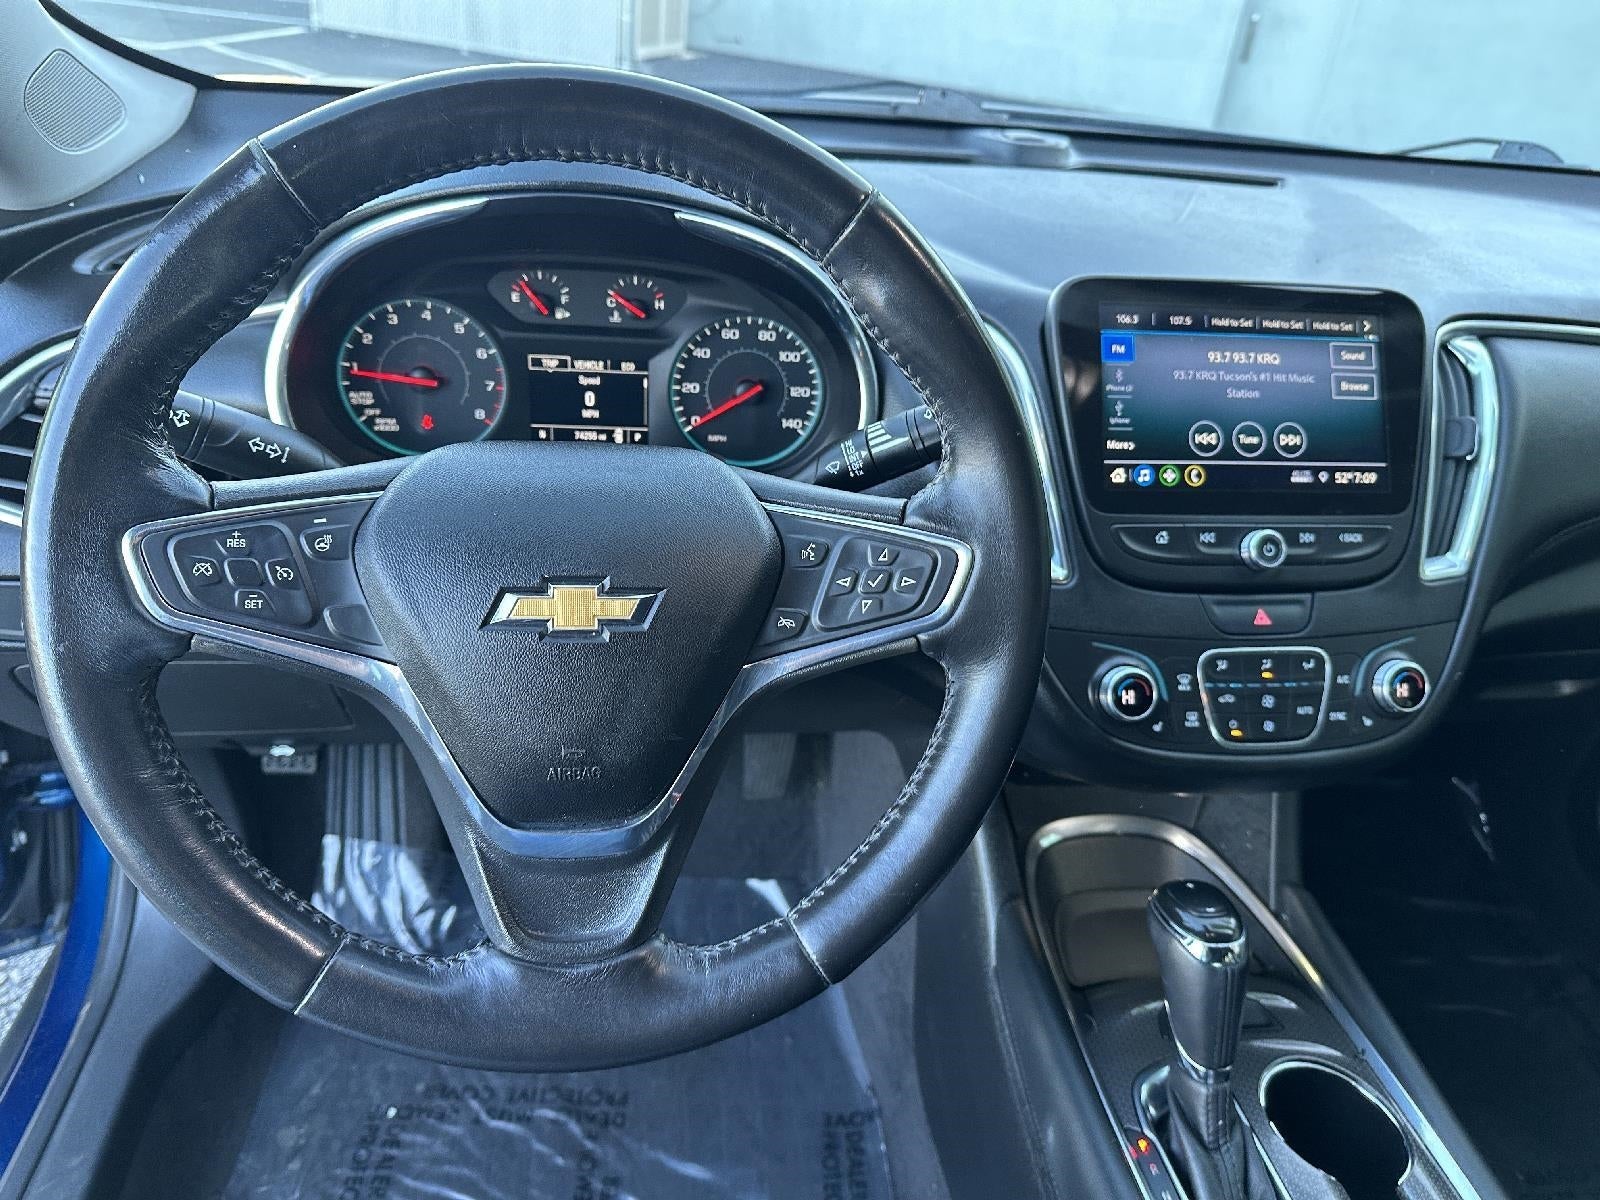 2019 Chevrolet Malibu LT